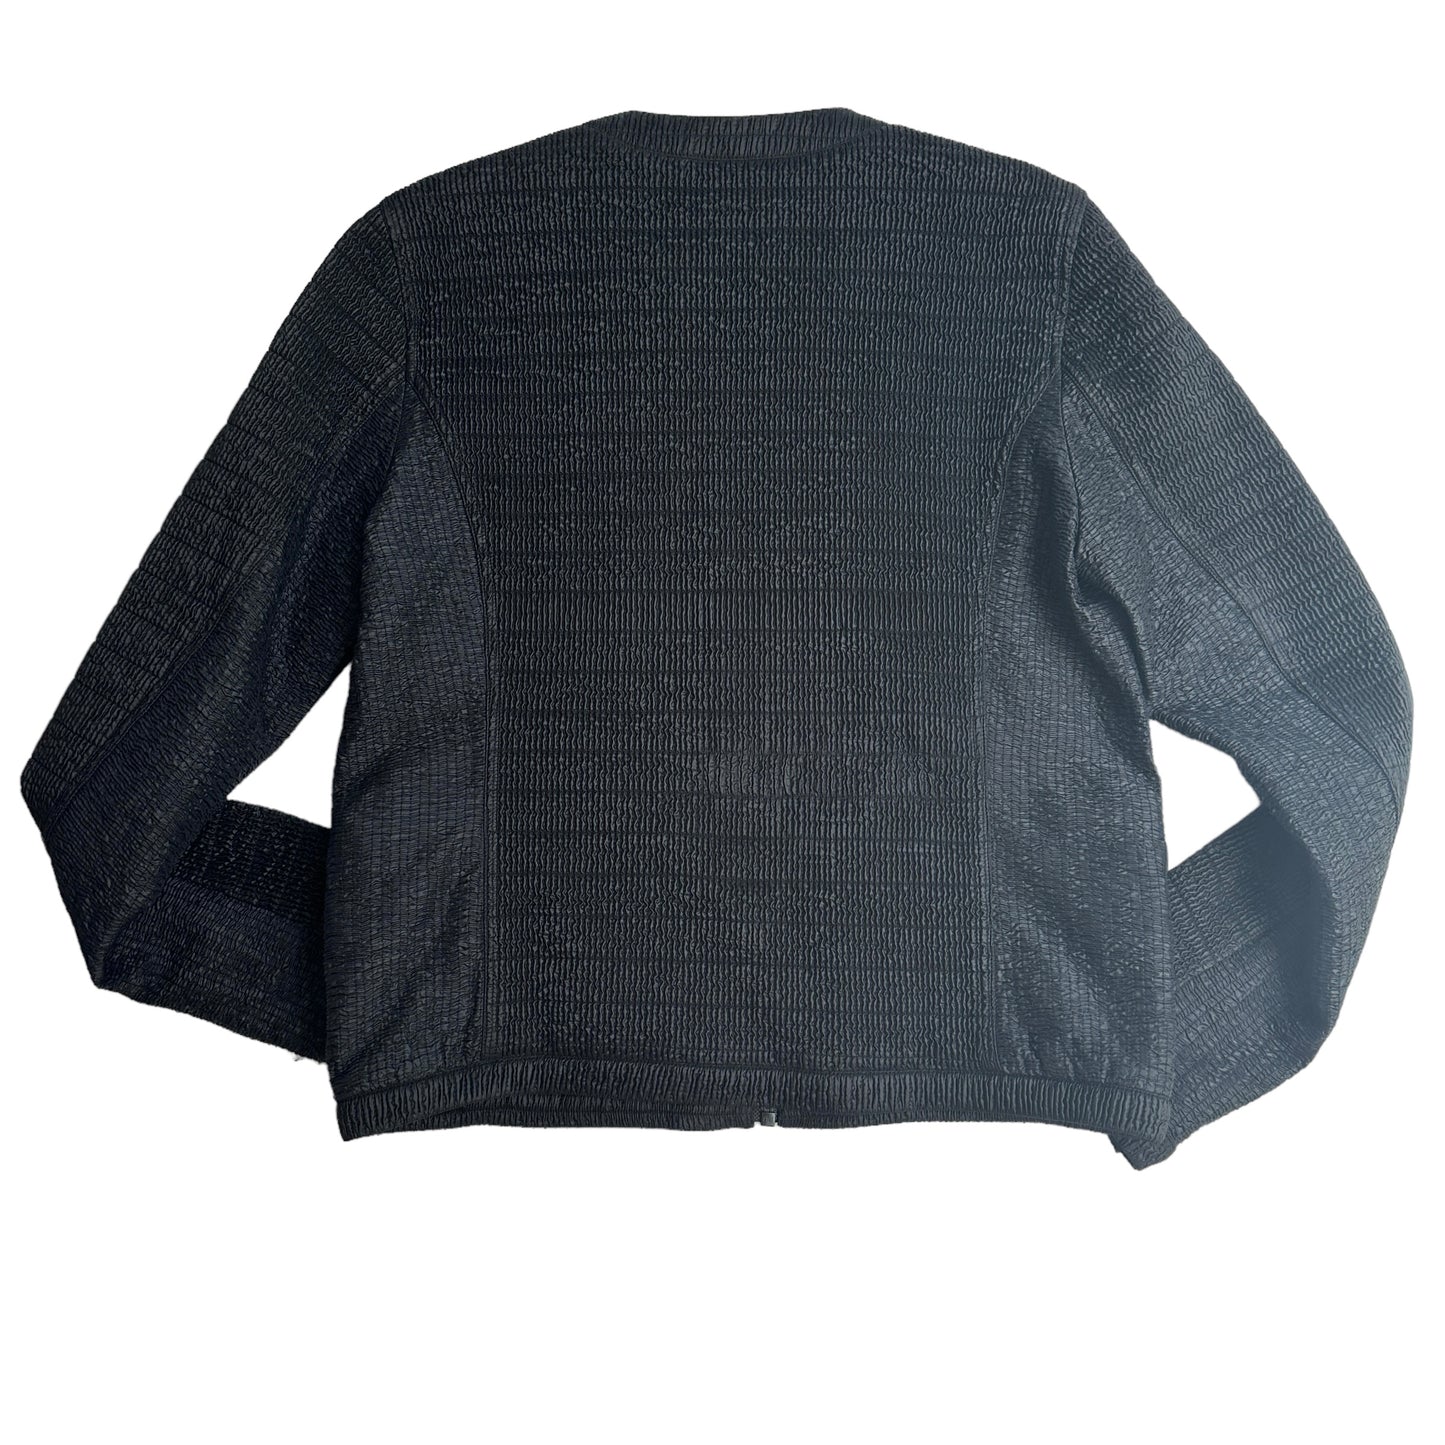 Black Sports Jacket - L